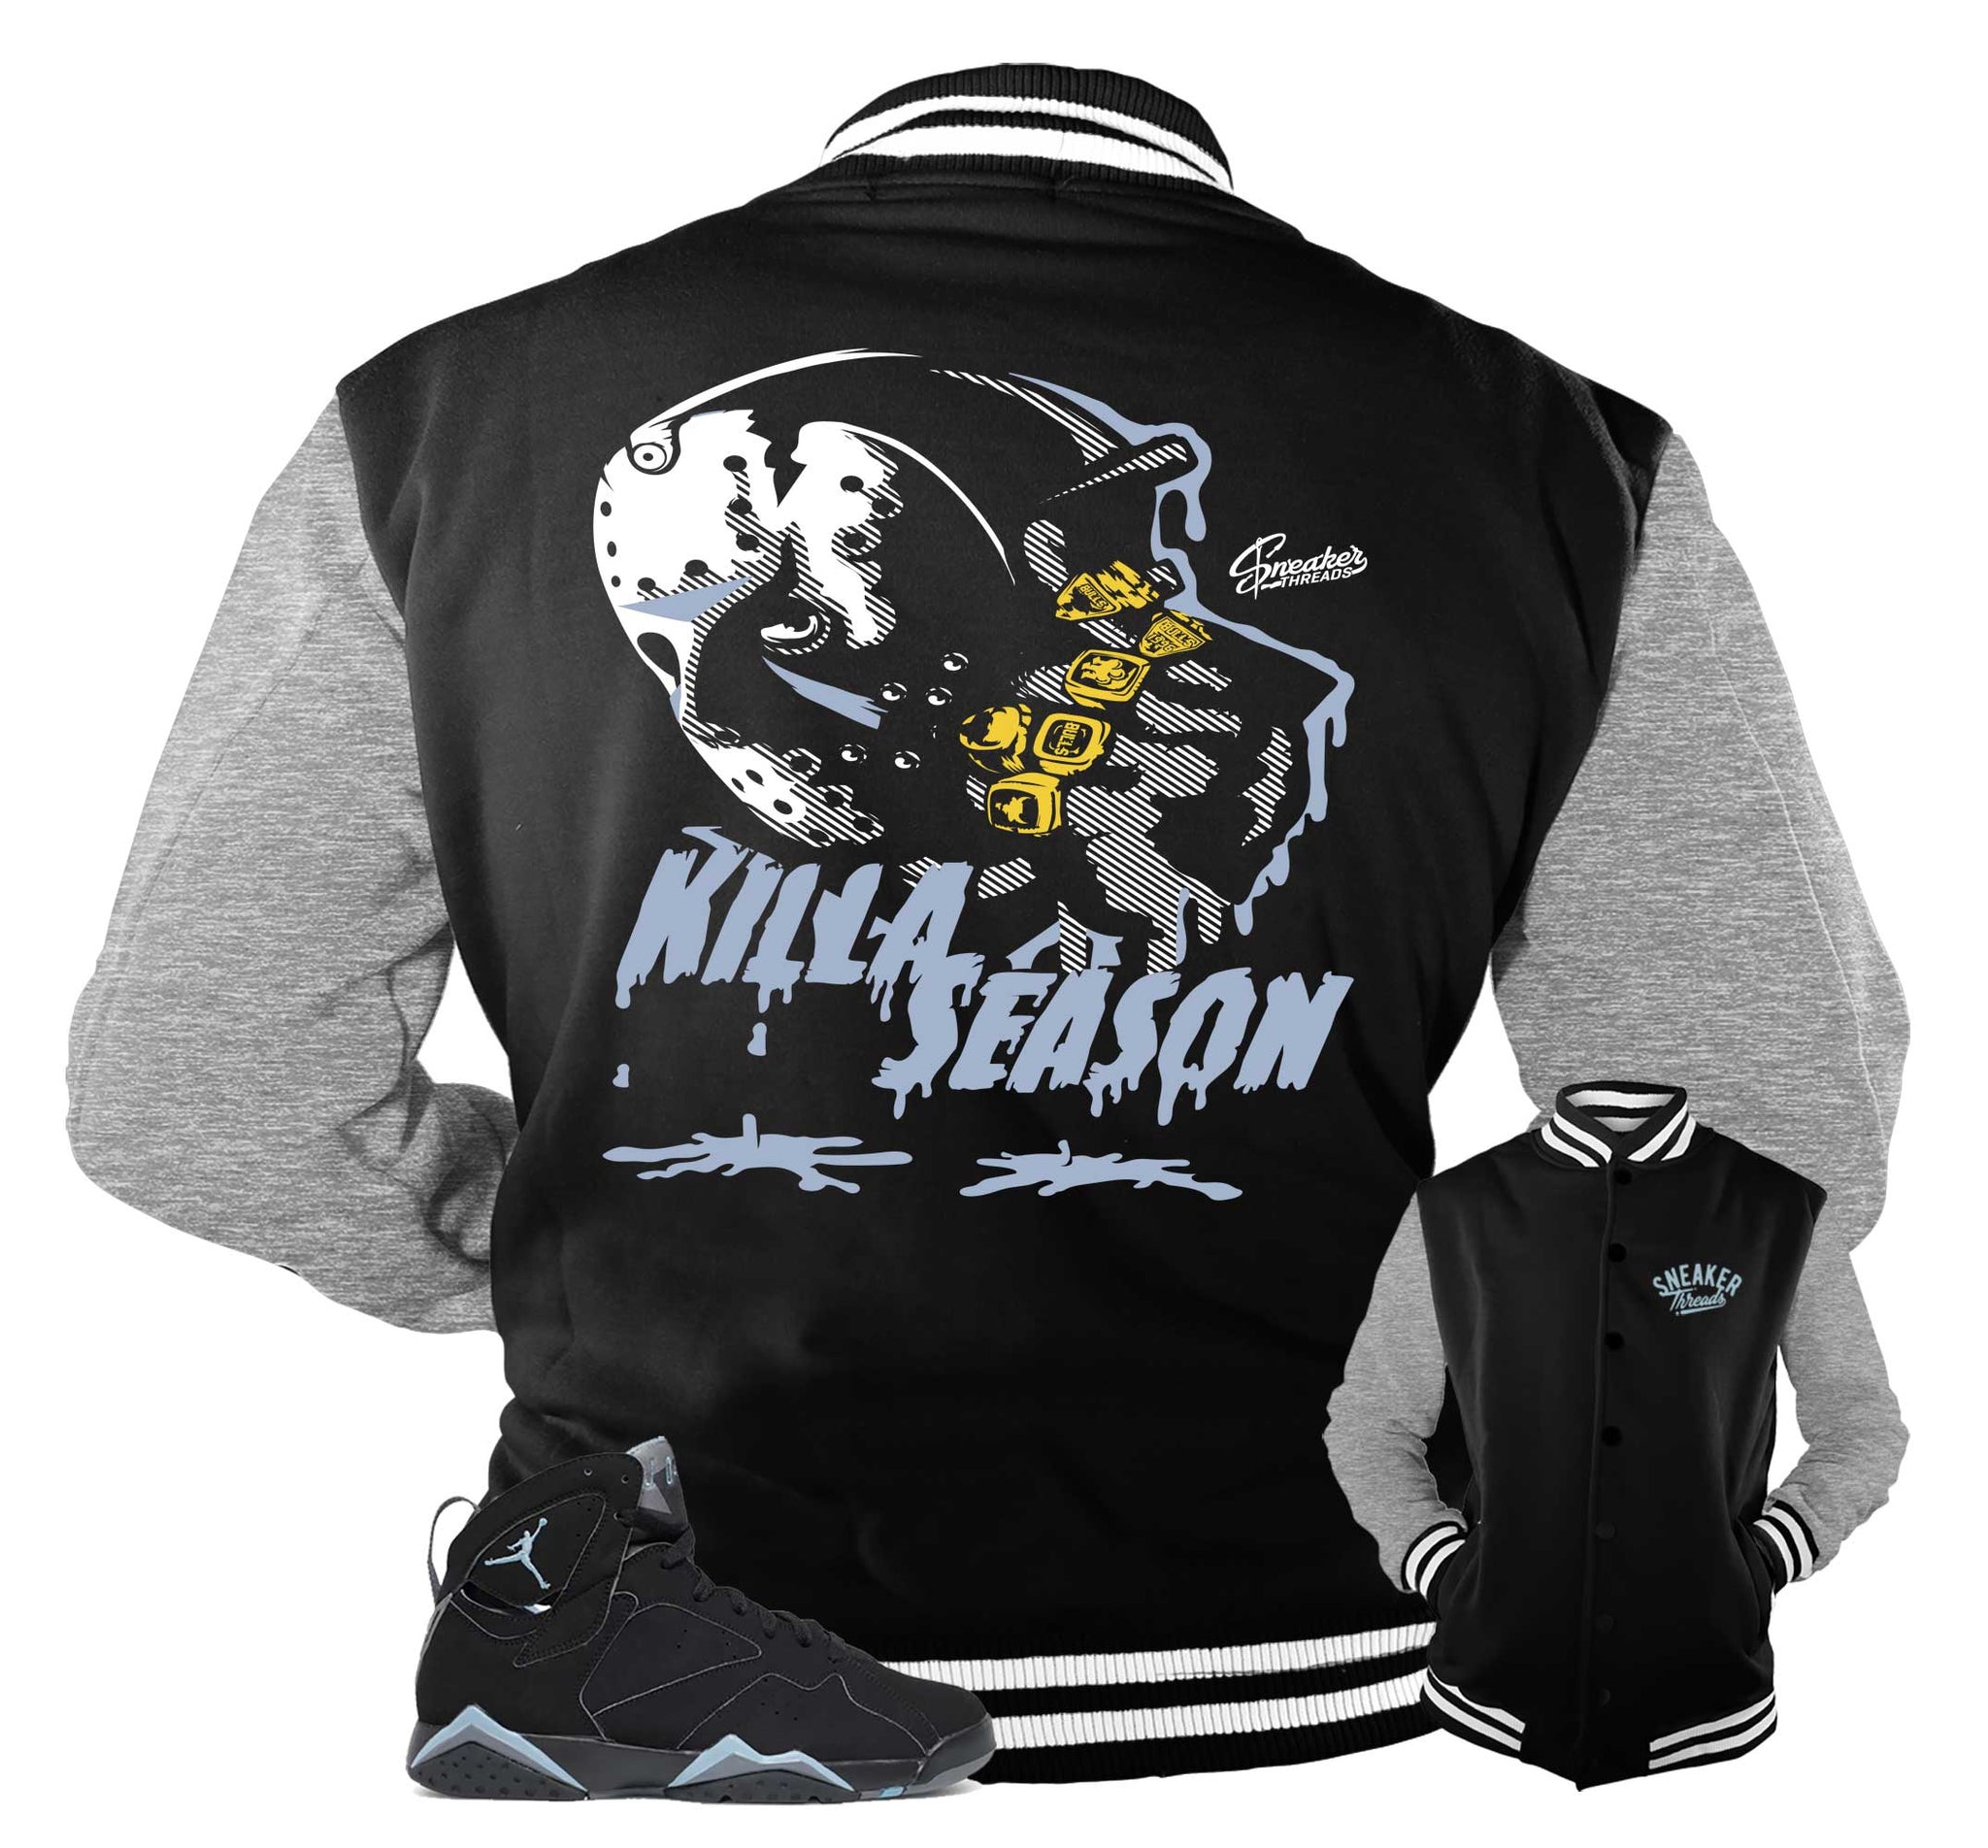 Retro 7 Chambray Varsity Jacket - Killa Season - Black